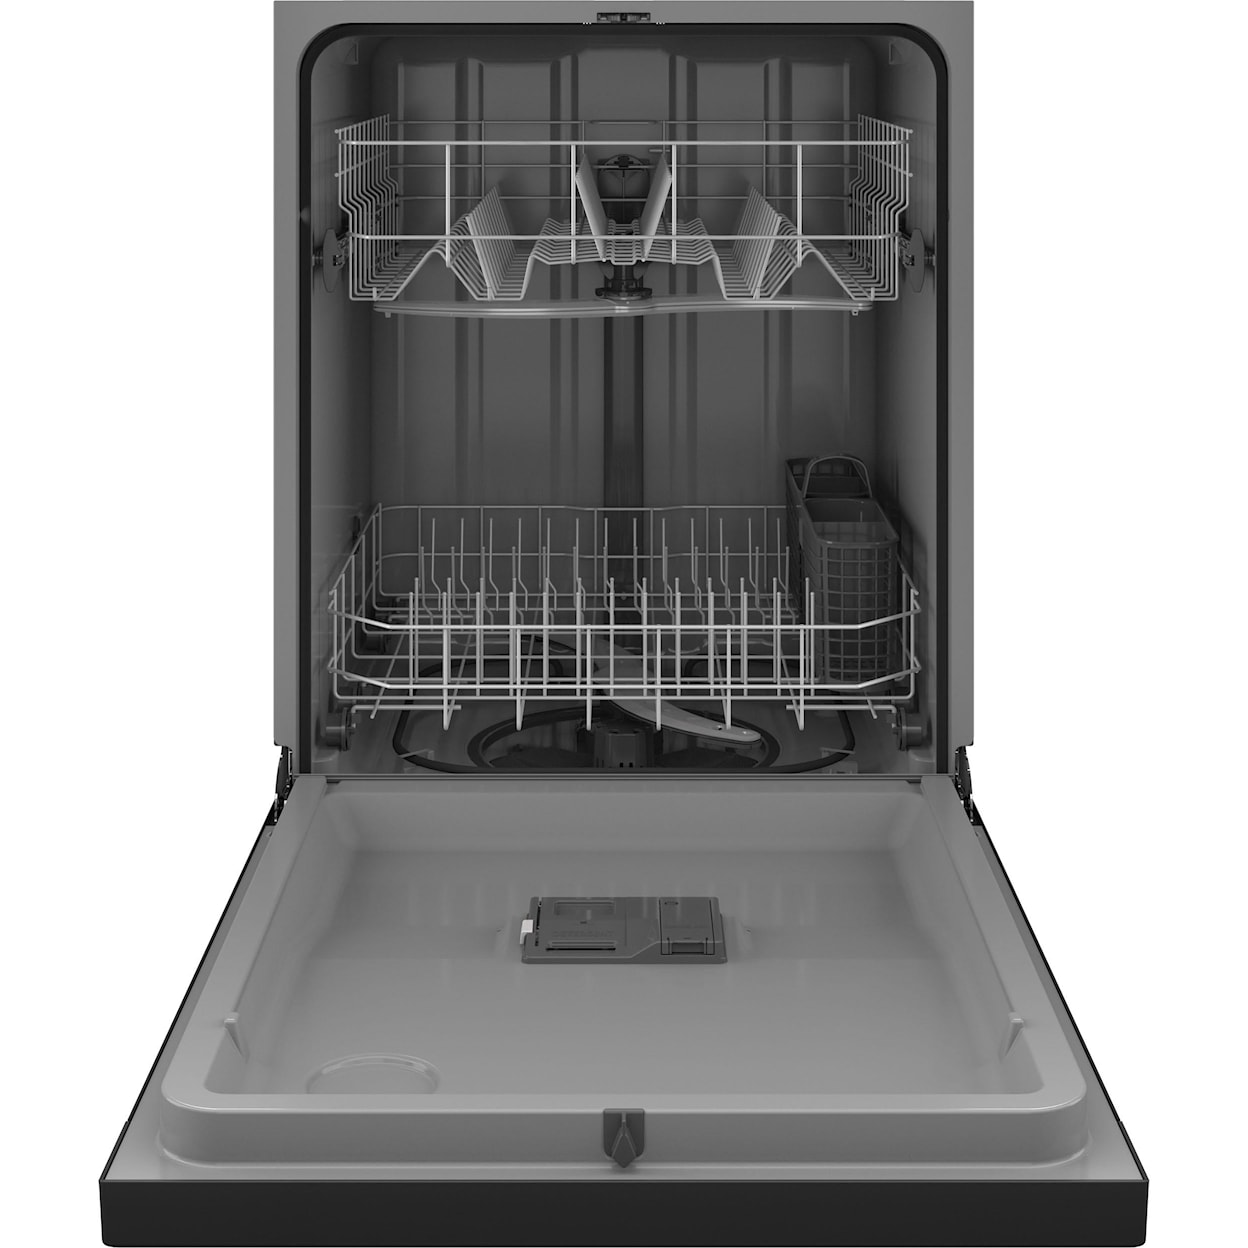 Hotpoint Dishwashers Built In Dishwasher